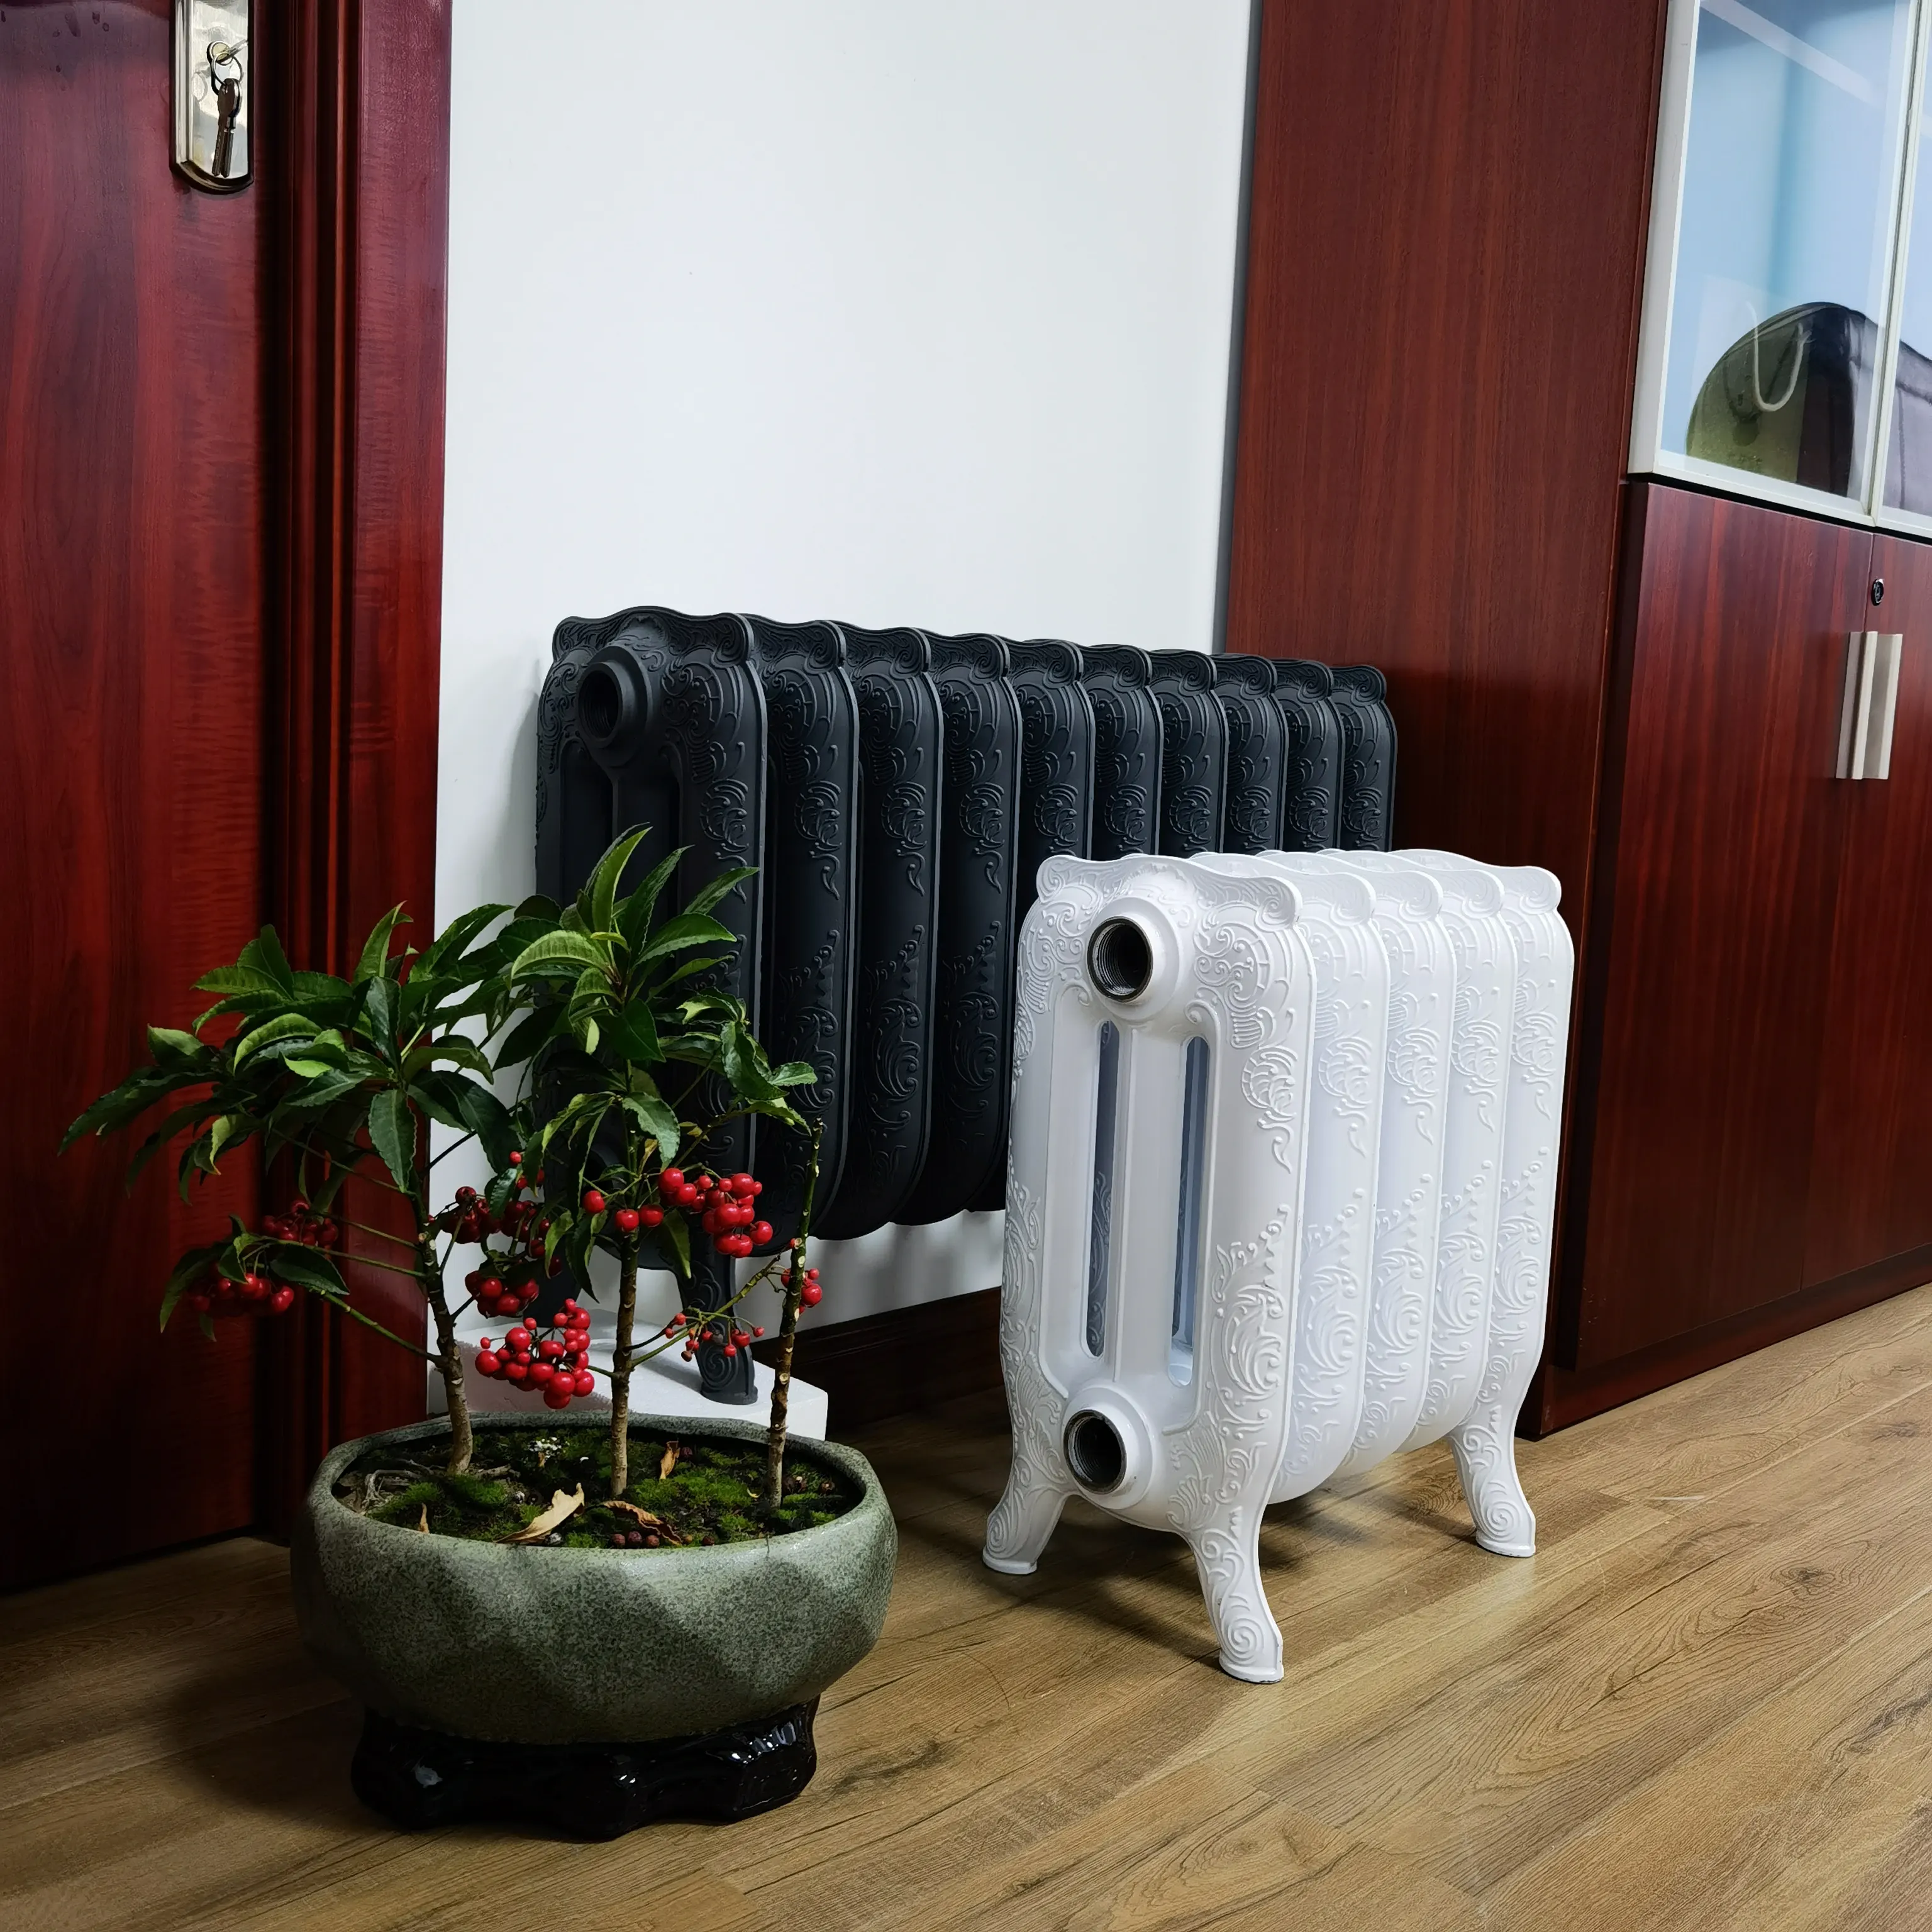 Radiatore bimetallico radiatore domestico in alluminio con pressofusione brevettata e radiatore in ghisa con riscaldamento della stanza dell'acqua calda